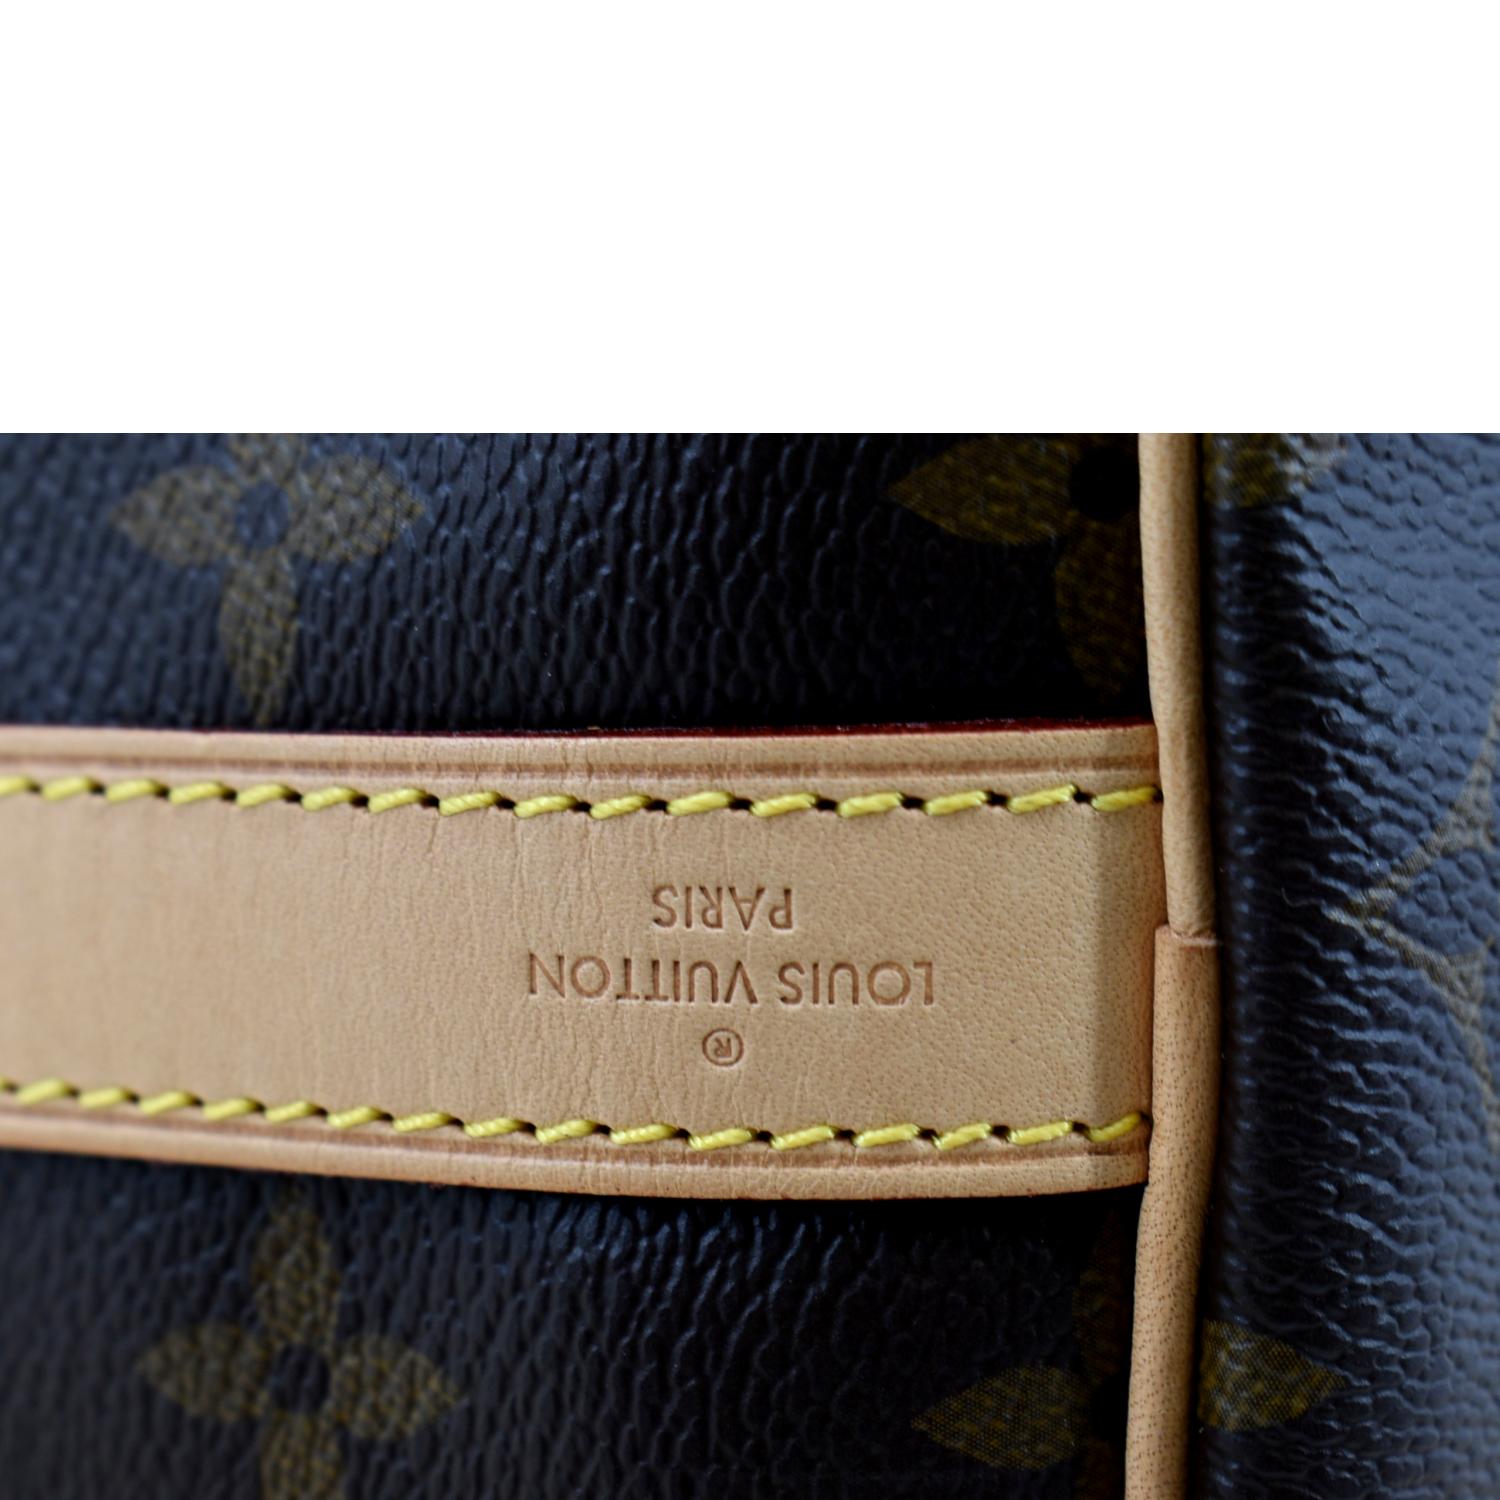 Louis Vuitton 2014 Speedy 35 Bandouliere 2way Handbag - Farfetch